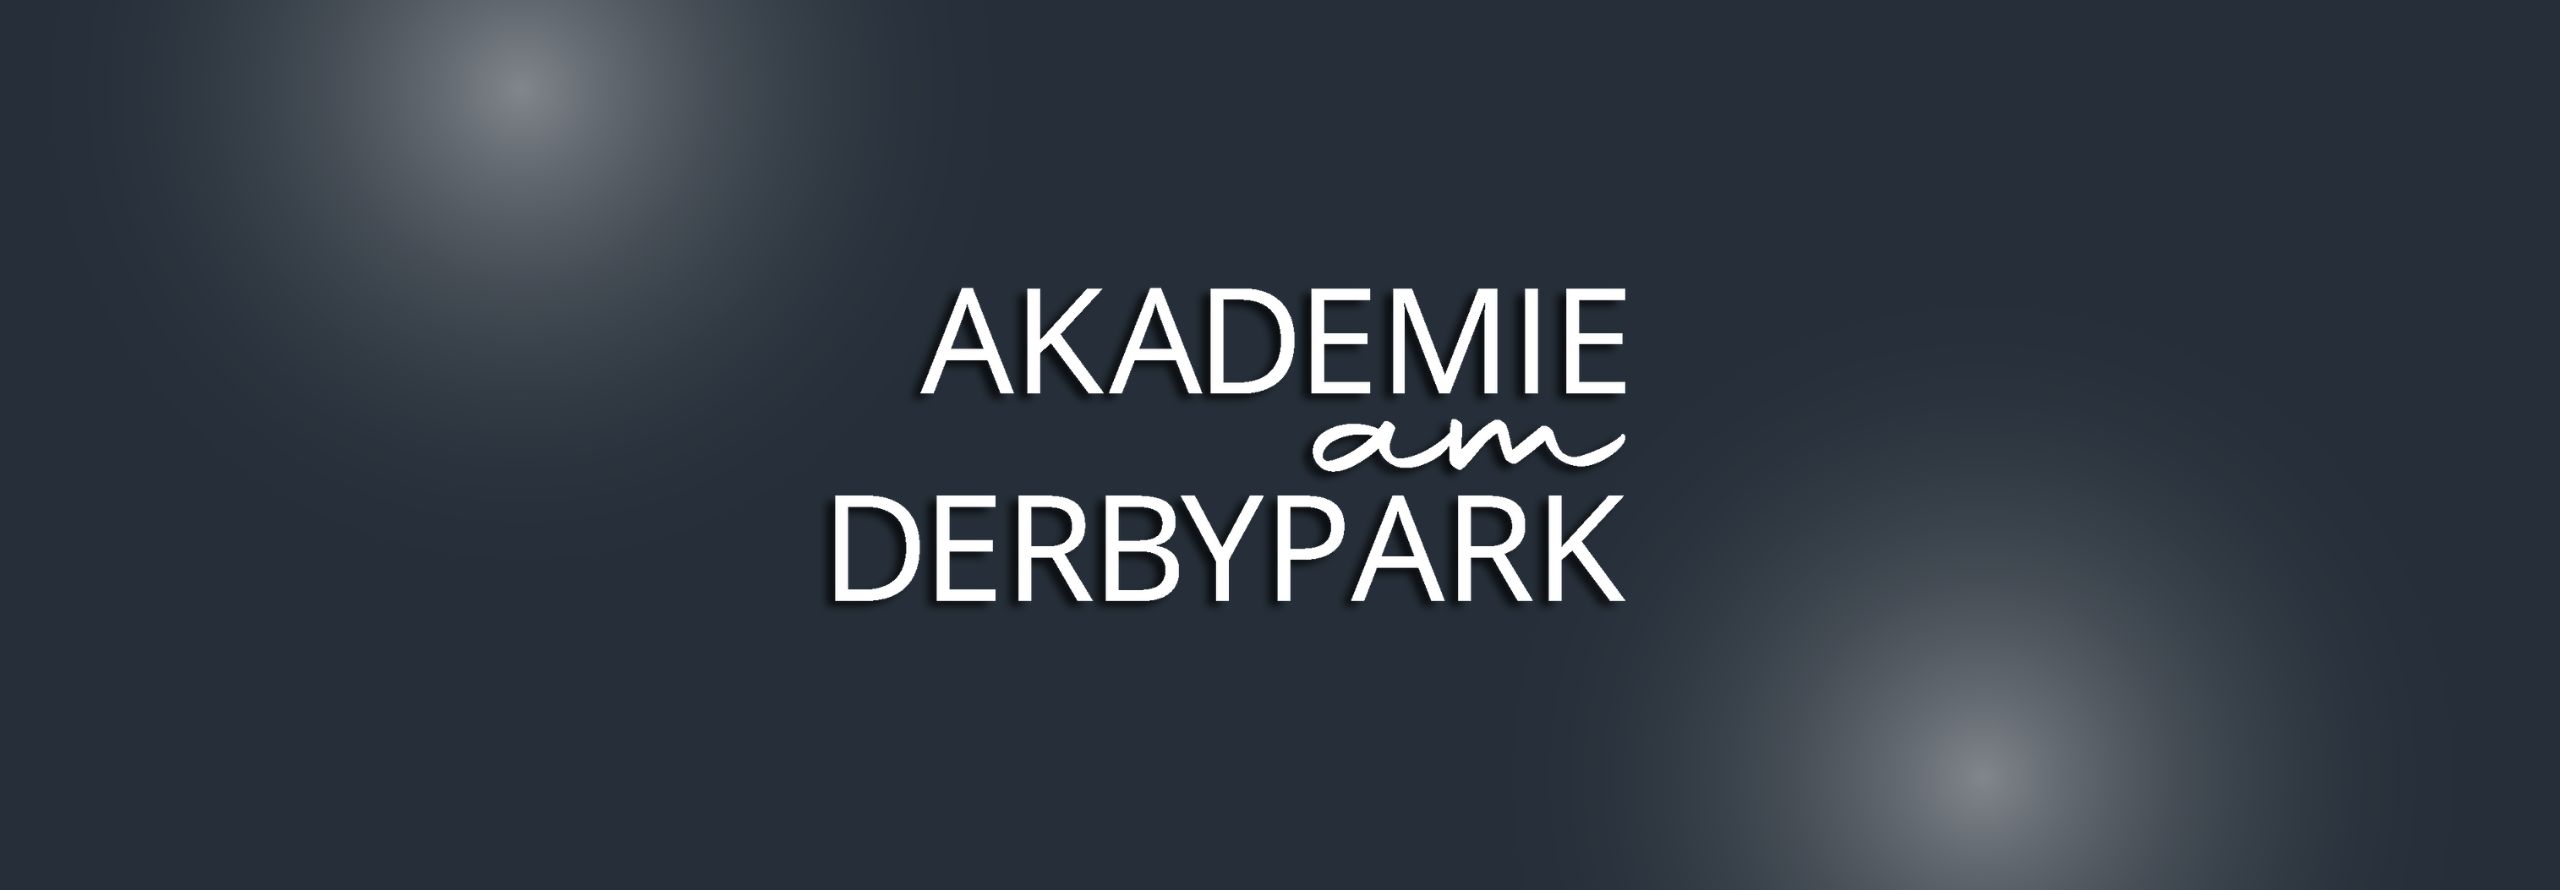 innovativ & präventiv Akademie am Derbypark